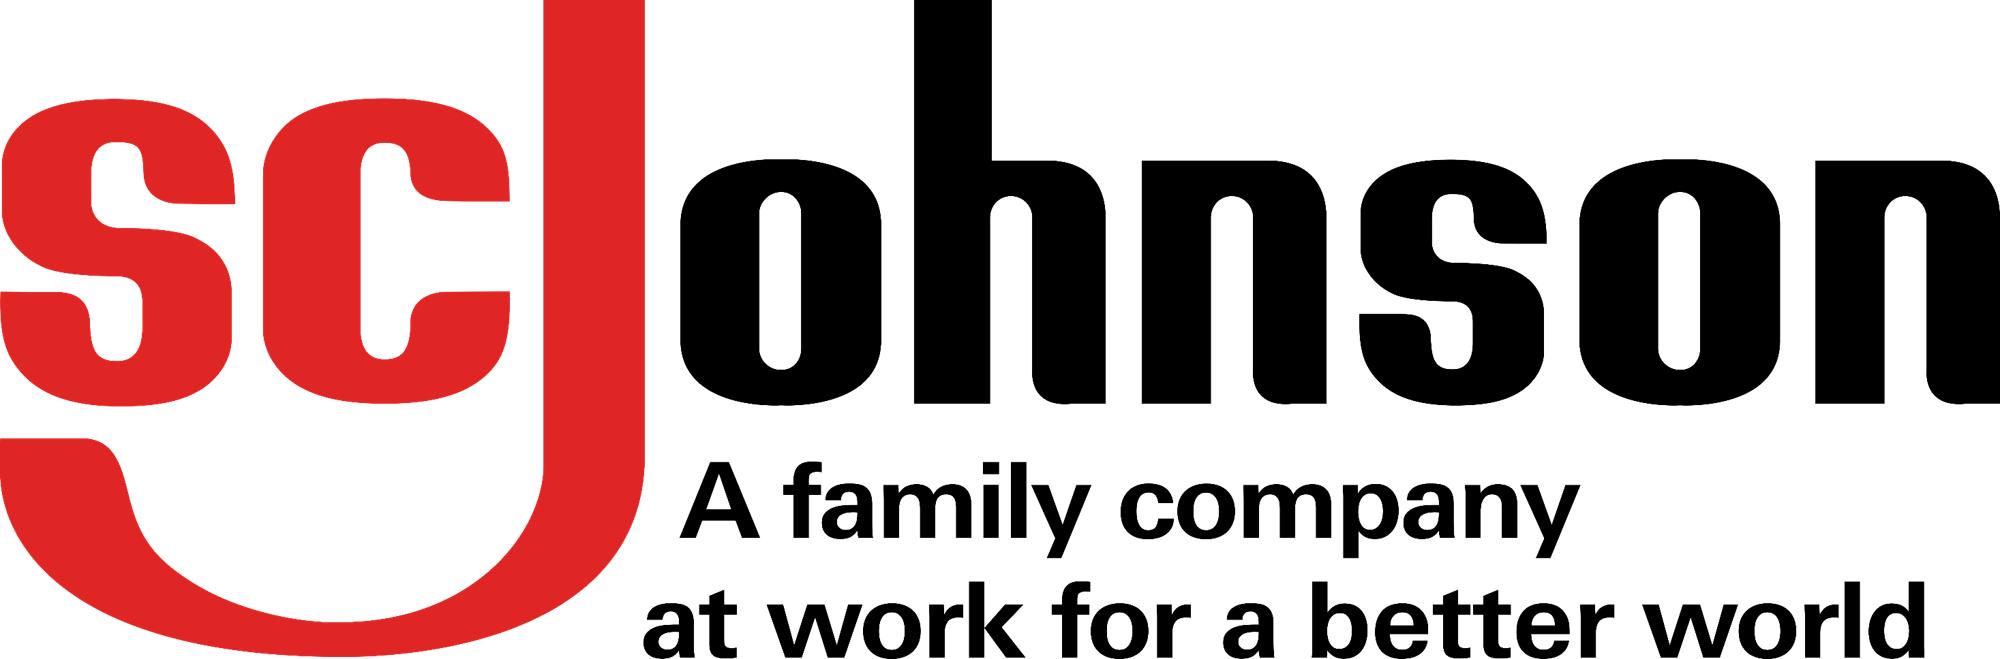 Hohnson Logo - S. C. Johnson & Son